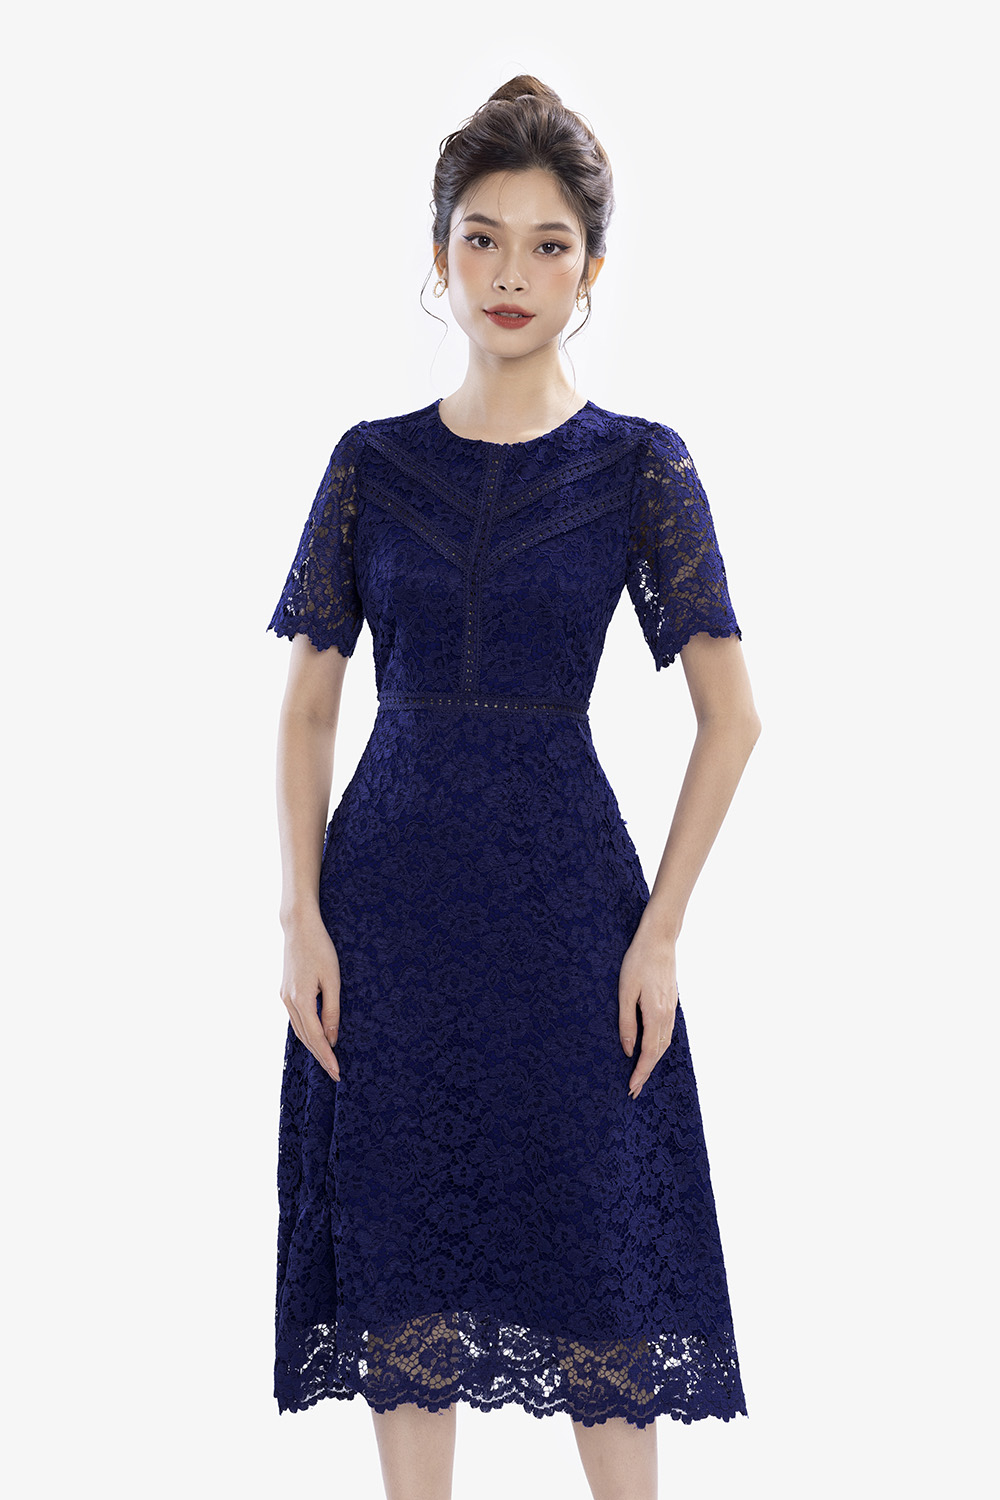 Chân váy xòe công sở màu xanh CV05-14 | Thời trang công sở K&K Fashion